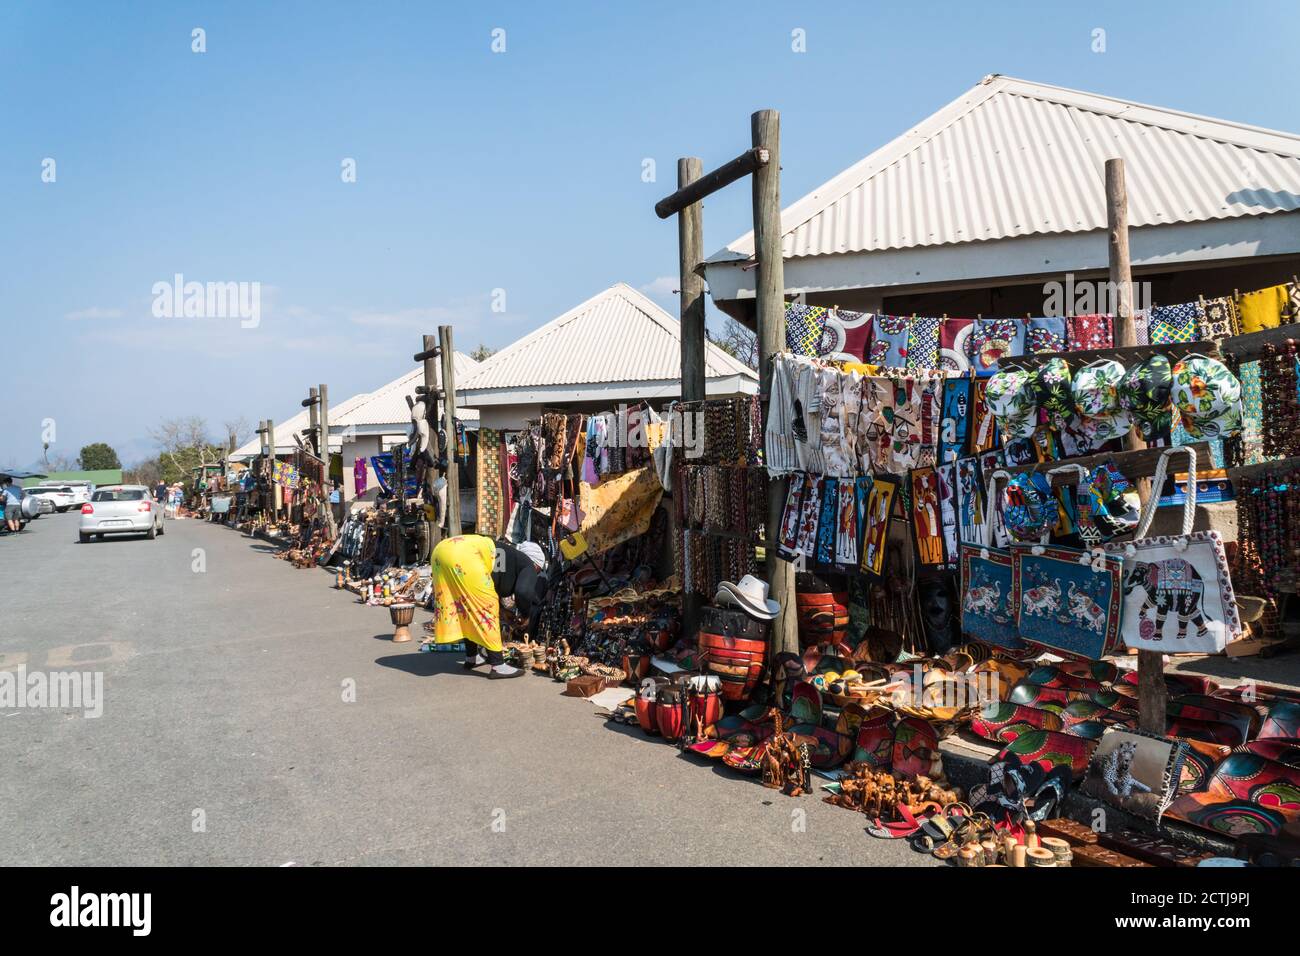 Straßenmarktstände mit traditionellen afrikanischen Kuriositäten, Kunst und Kunsthandwerk, Souvenirs für den Touristenhandel in God's Window, Mpumalanga, Südafrika Stockfoto